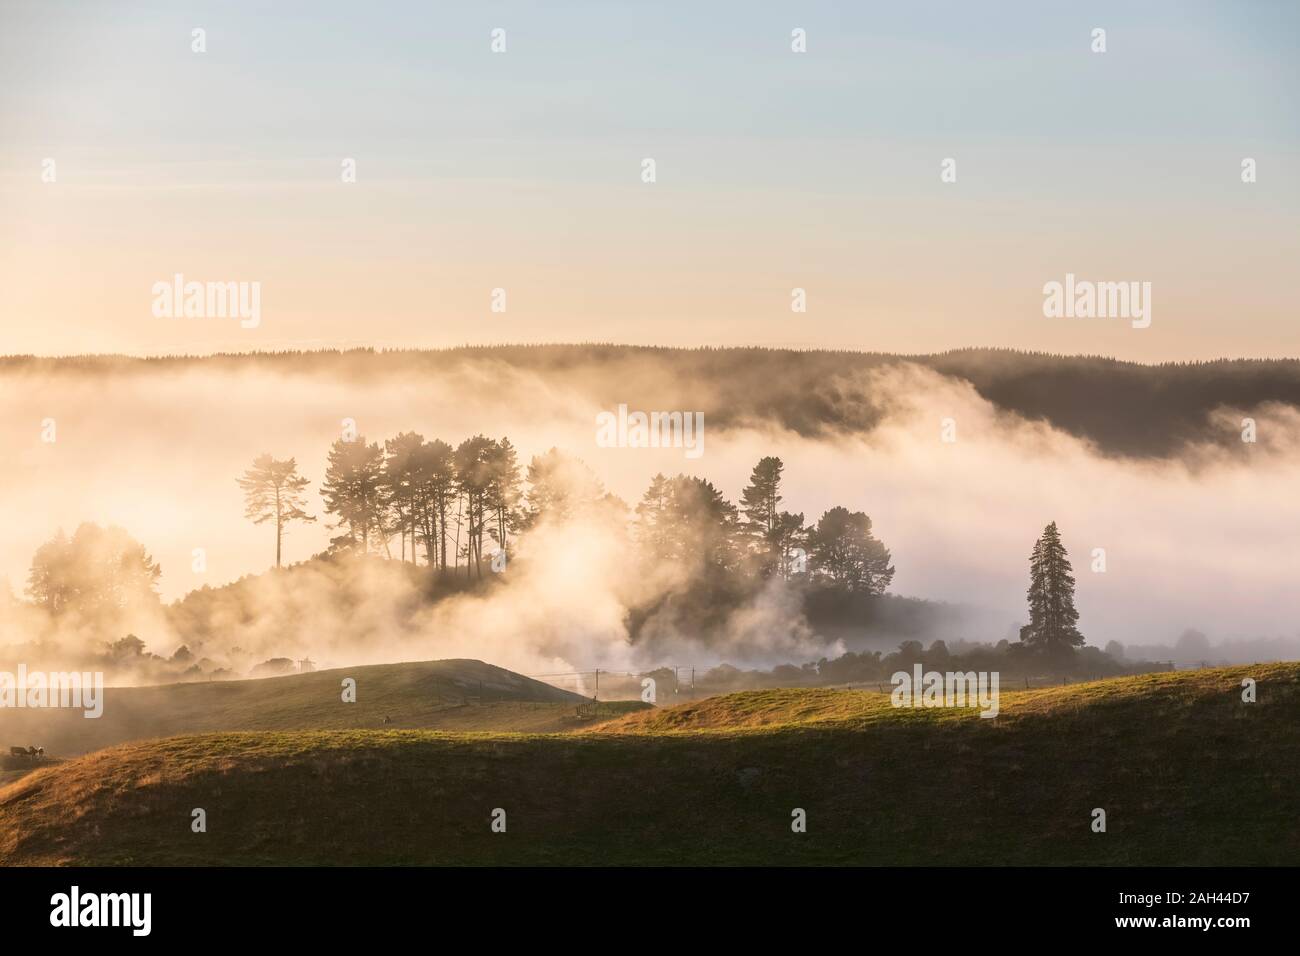 Nueva Zelanda, Isla del Norte, Rotorua, paisaje ondulado envuelto en una espesa niebla matutina Foto de stock